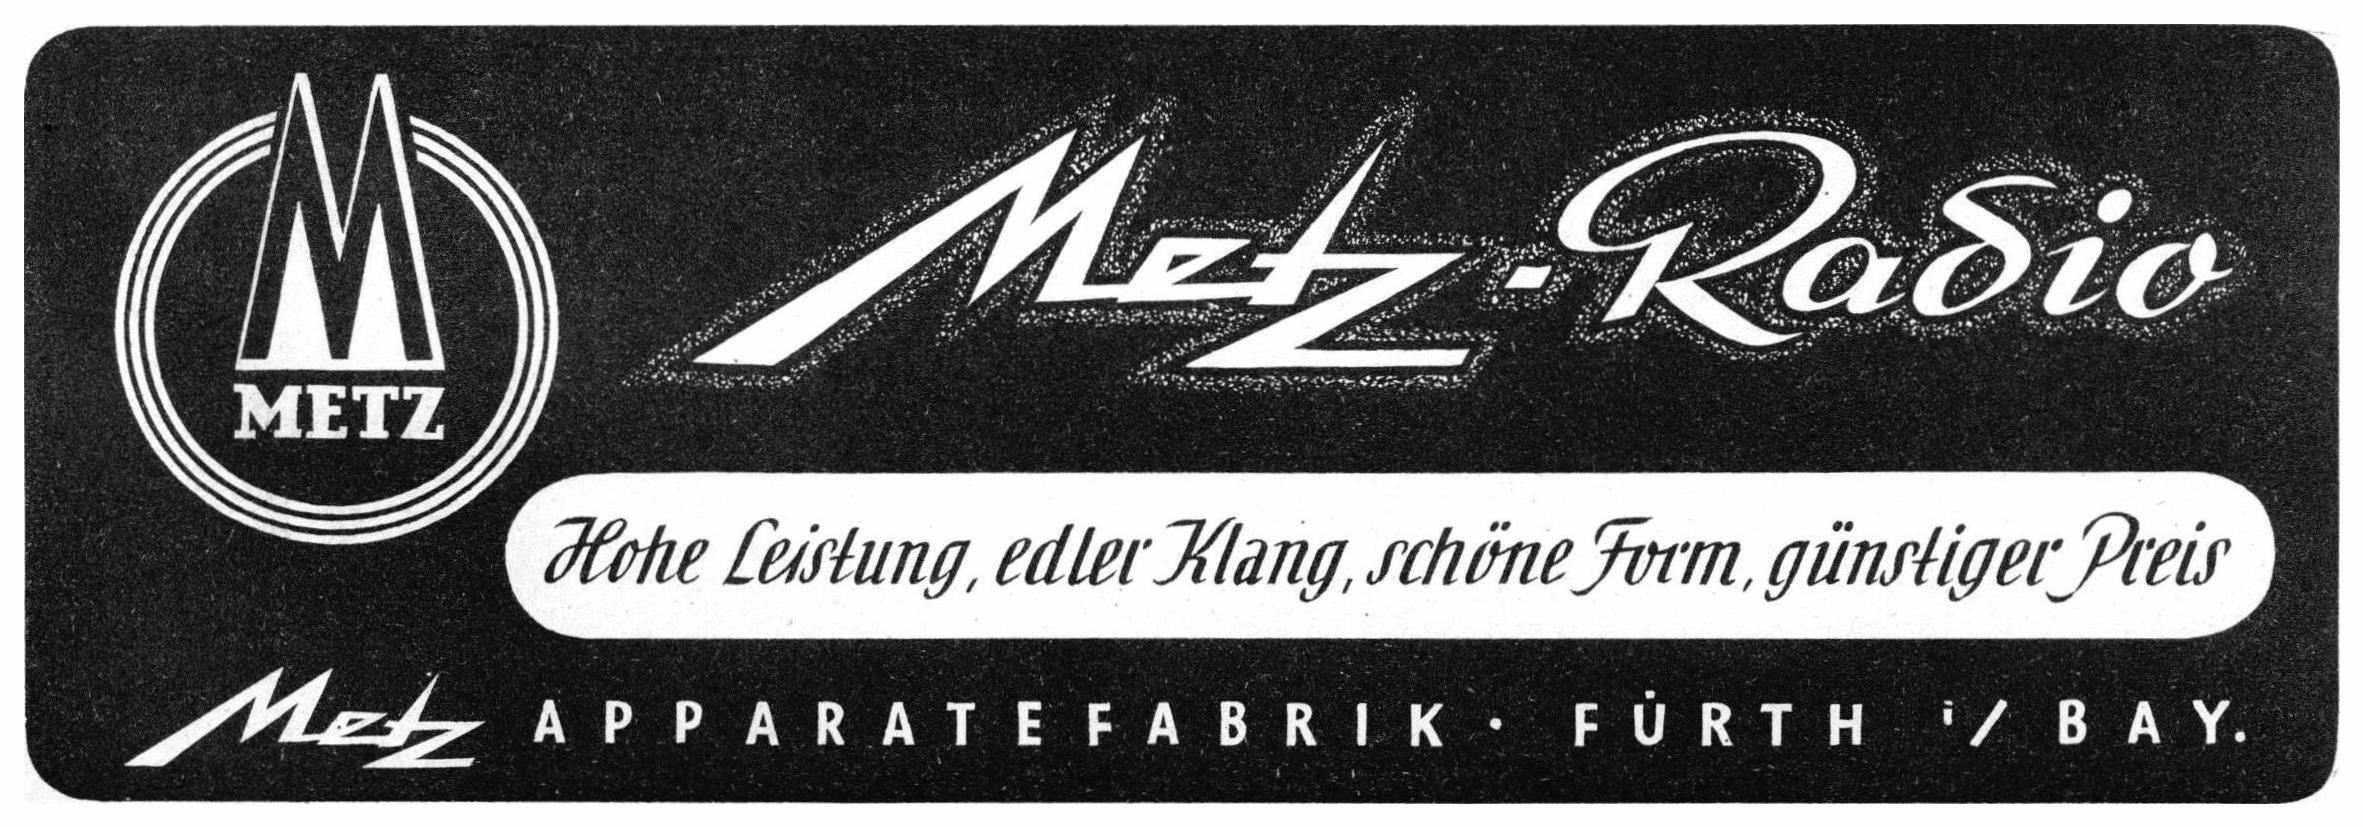 Metz 1949 02.jpg